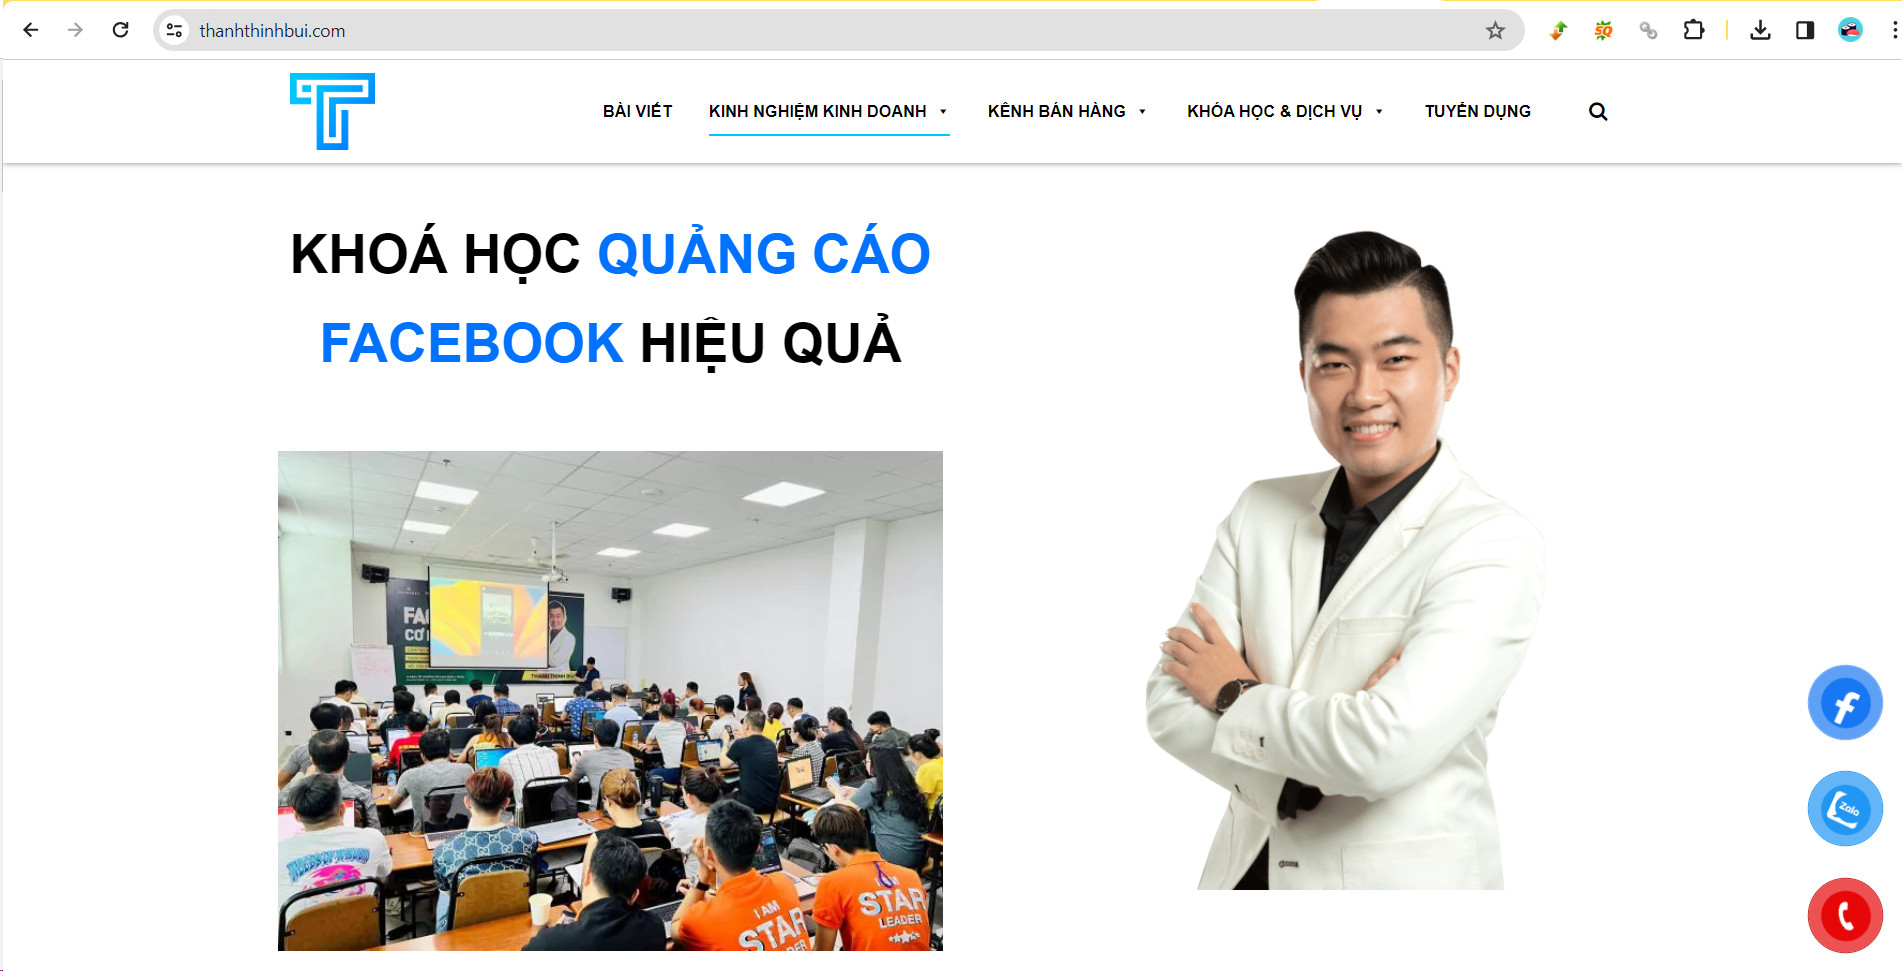 Website thanhthinhbui.com